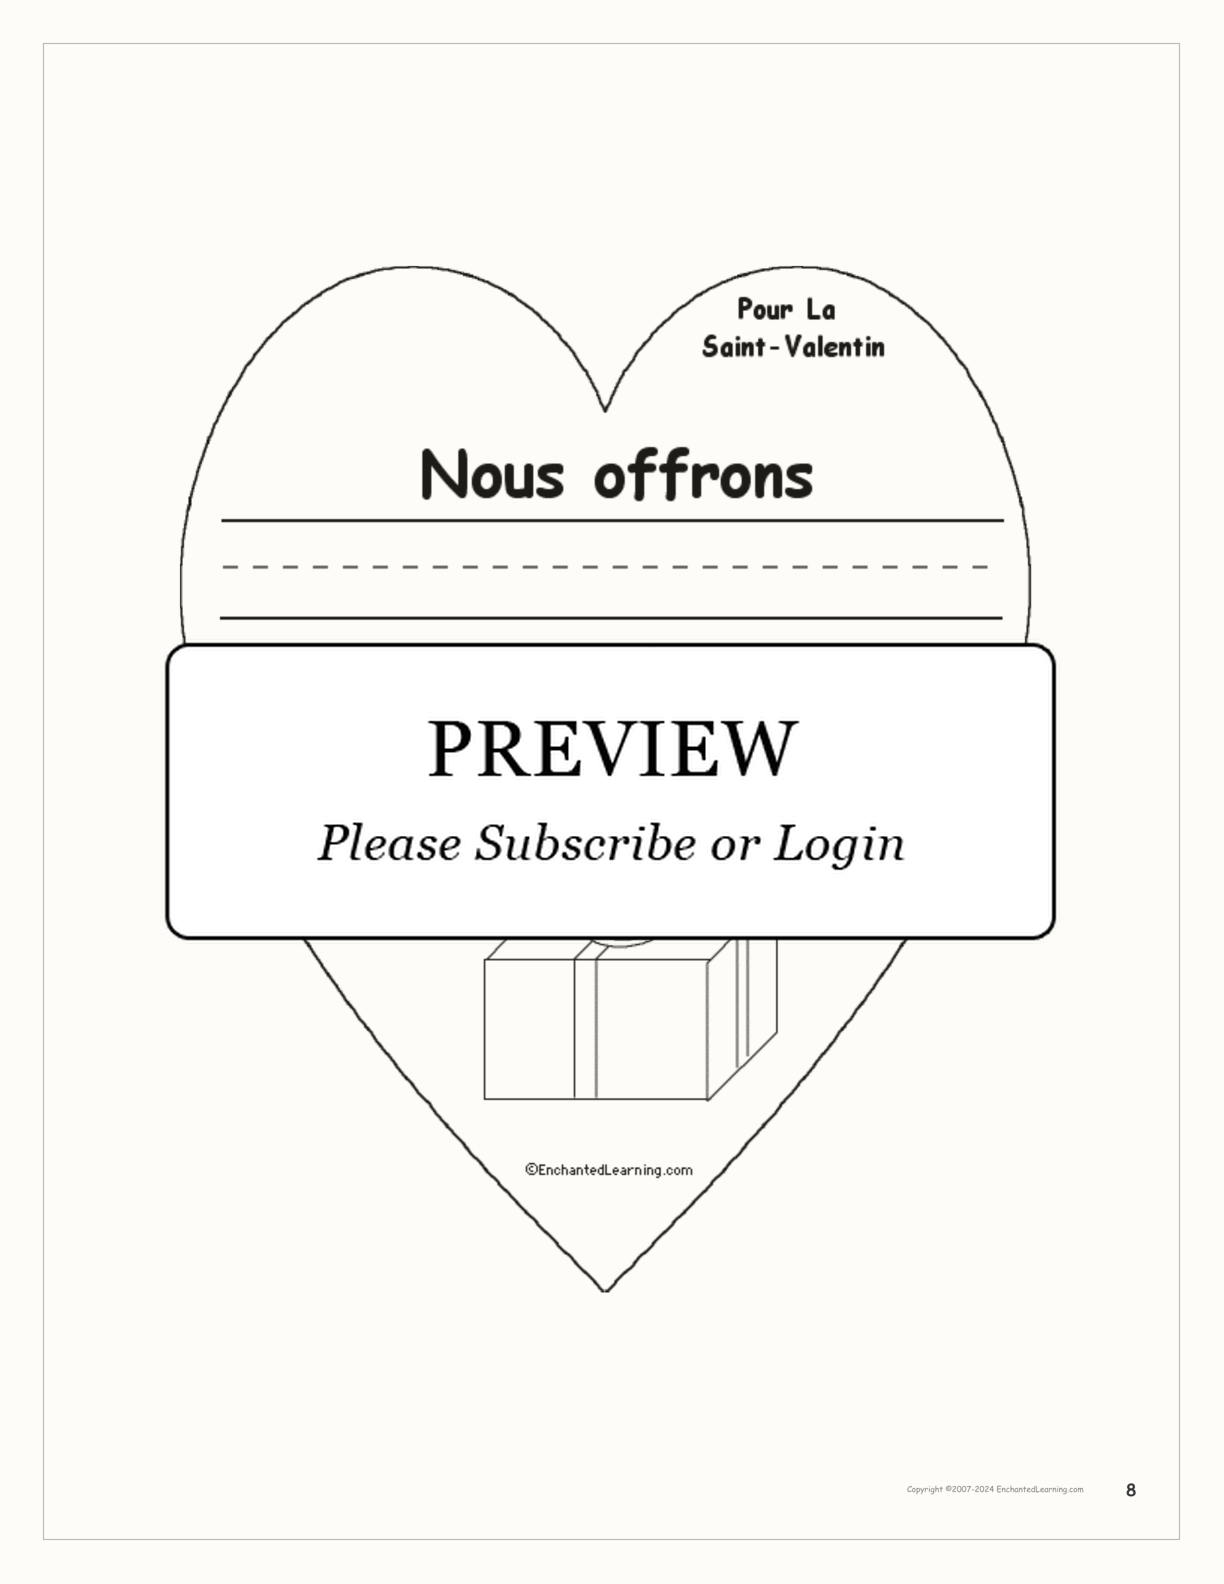 Pour la Saint-Valentin interactive worksheet page 8